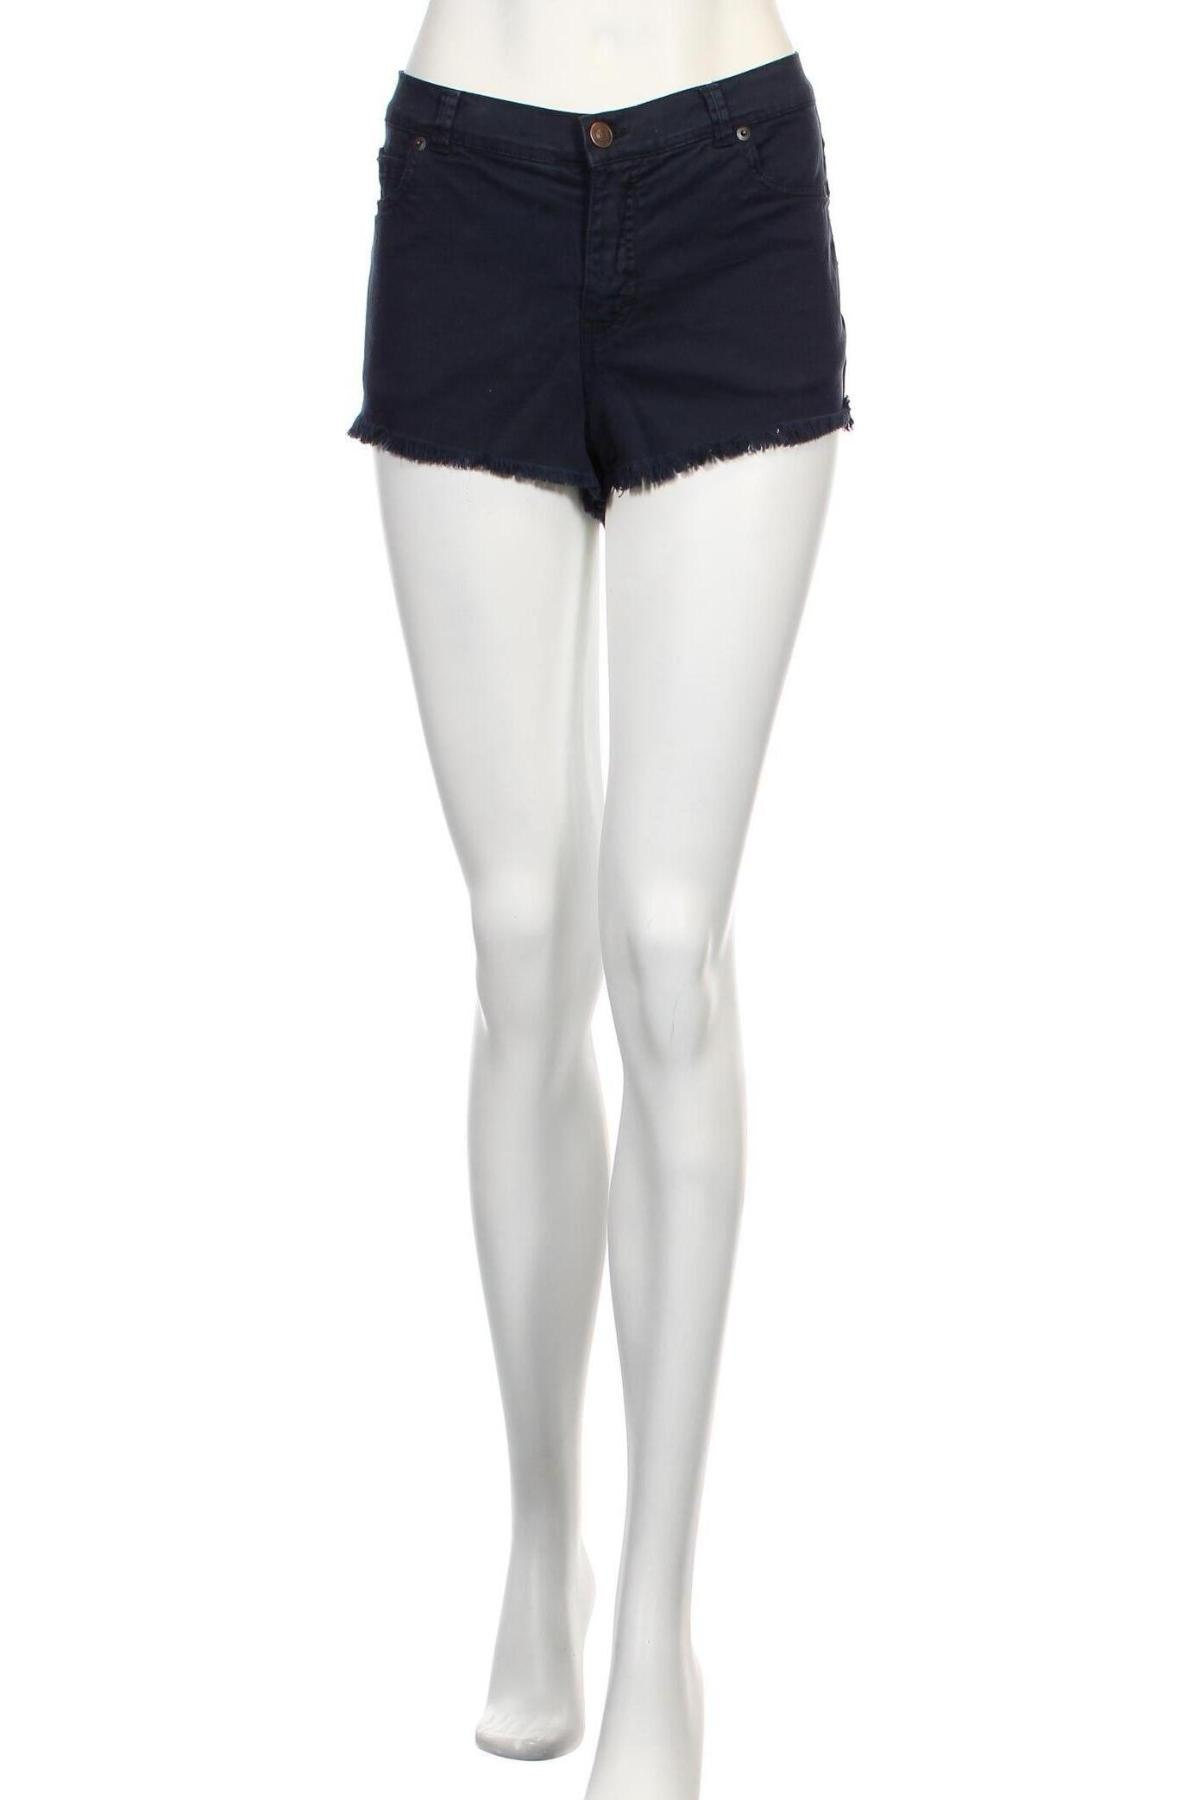 Γυναικείο κοντό παντελόνι Scout, Μέγεθος L, Χρώμα Μπλέ, 97% βαμβάκι, 3% ελαστάνη, Τιμή 13,40 €